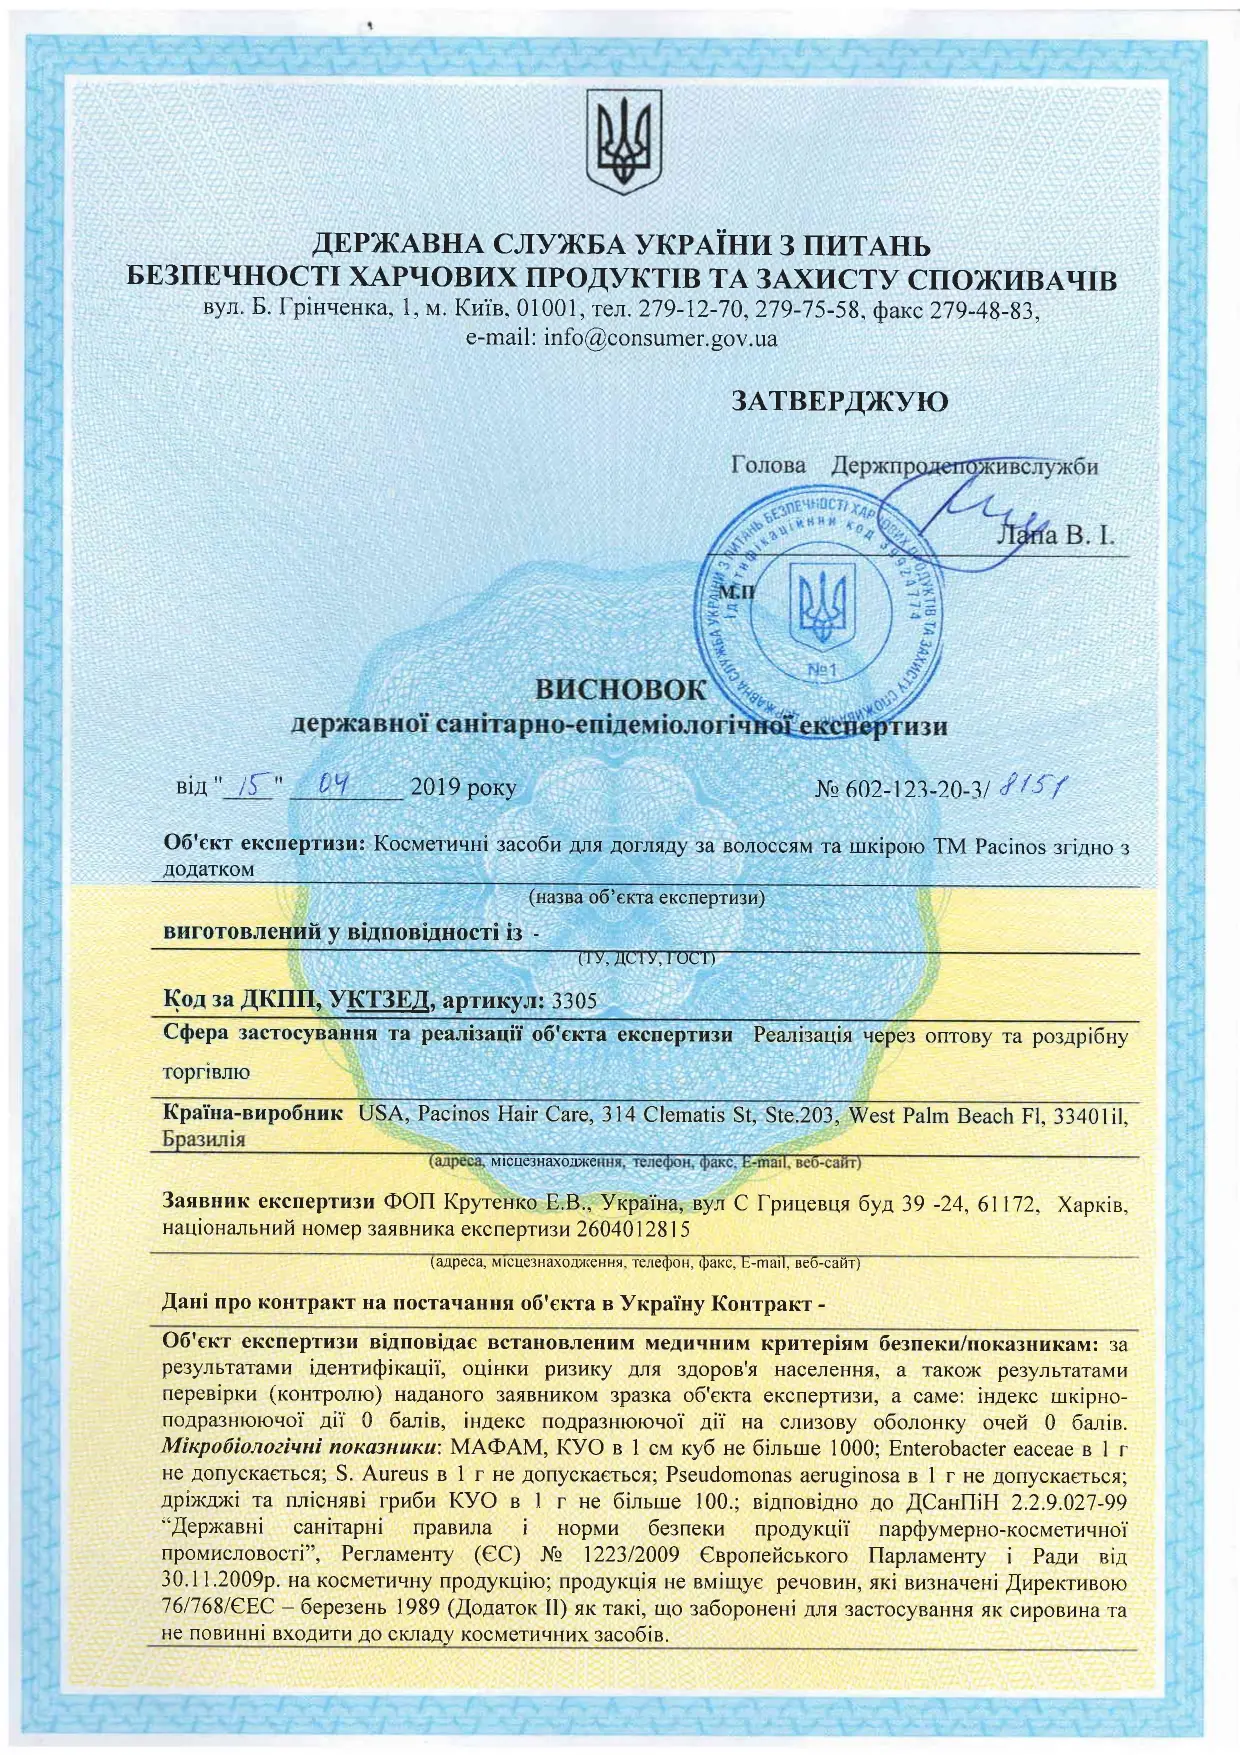 Сертифікат відповідності до державних санітарно-епідемічних стандартів косметичних засобів для догляду за волоссям та шкірою TM Pacinos